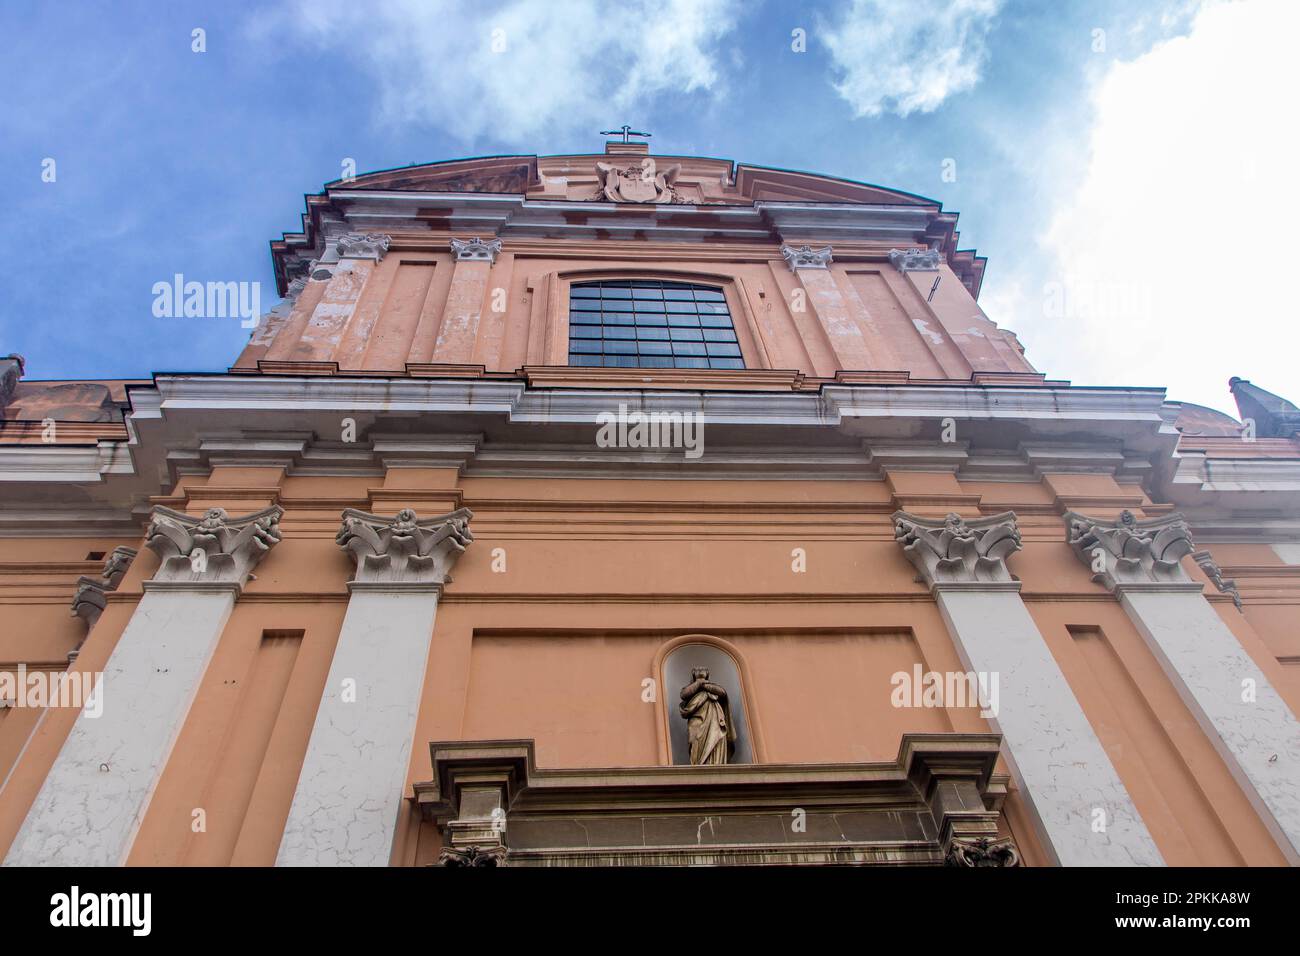 Facade of Santa Teresa degli Scalzi church in the historic center of Naples, Italy Stock Photo